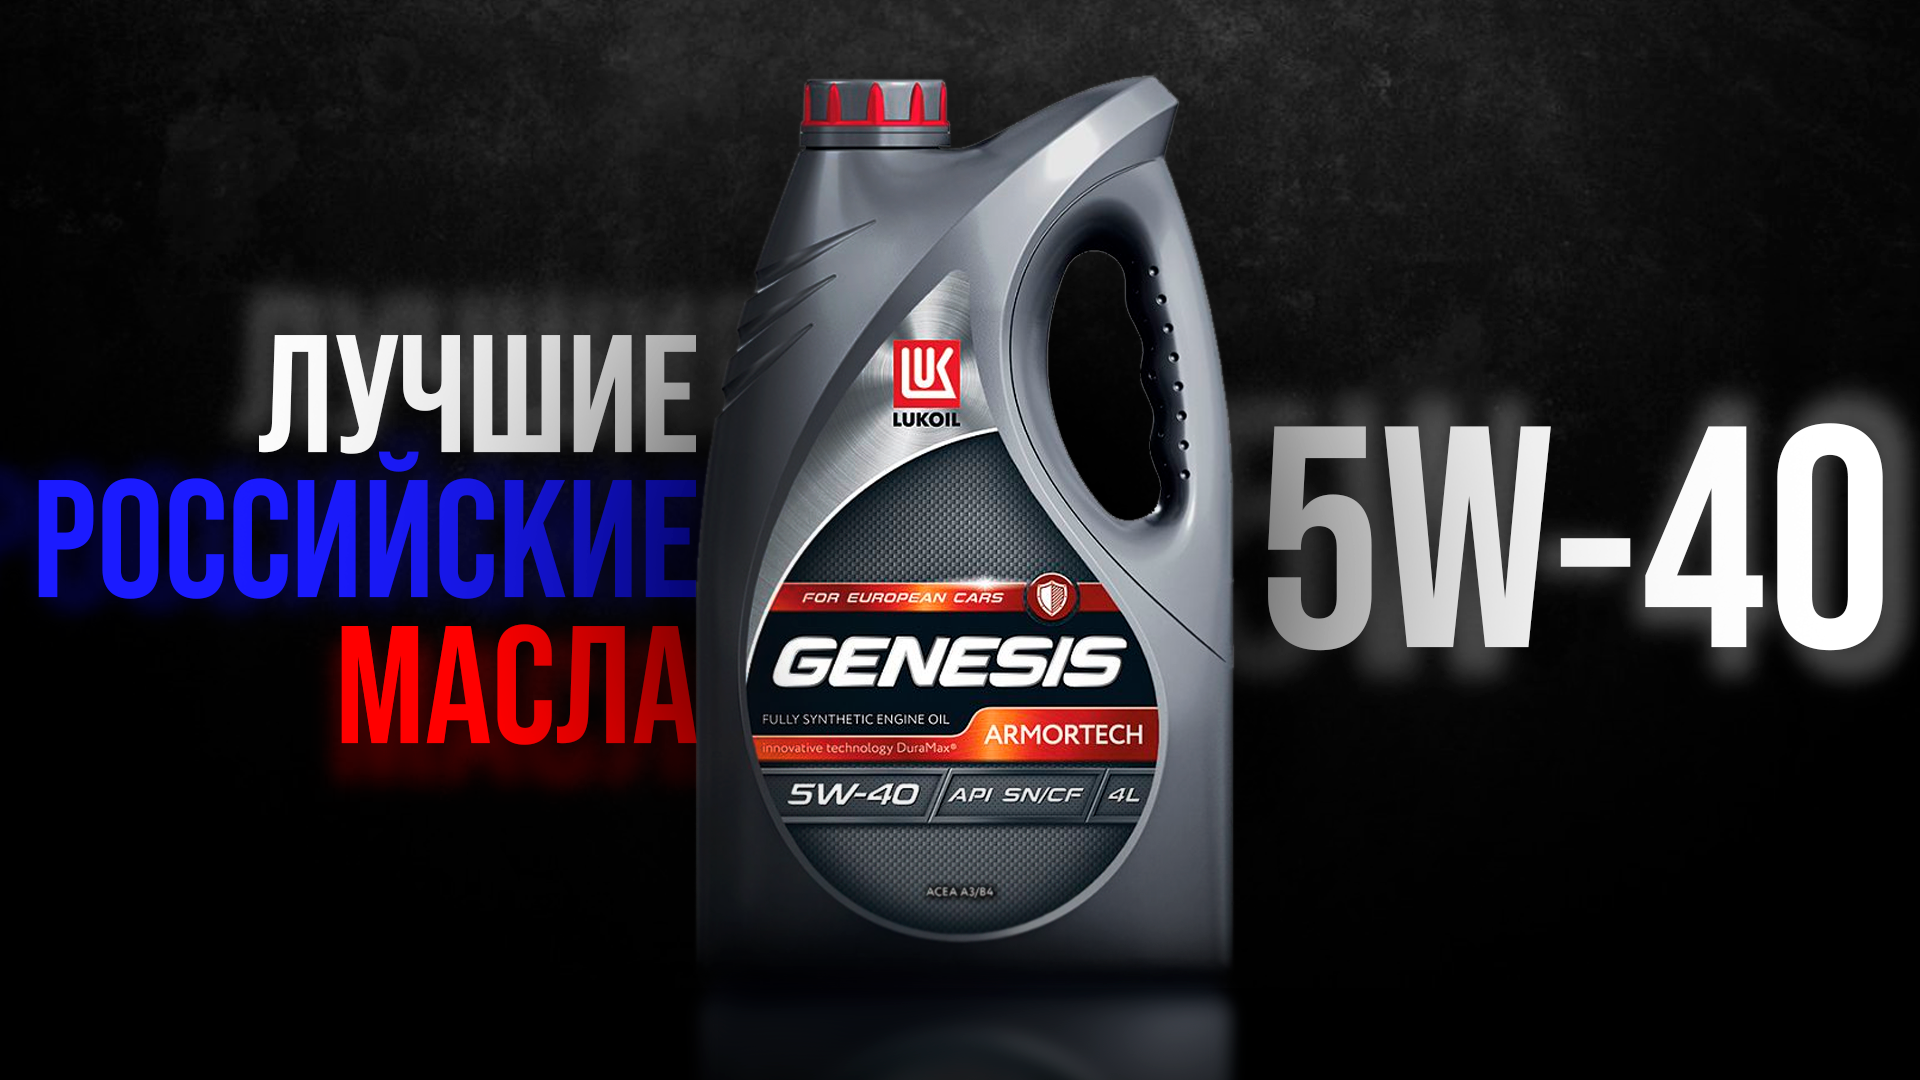 Лукойл Генезис. Российские масла. Популярные российские масла. Масло Тошиба 5w40.